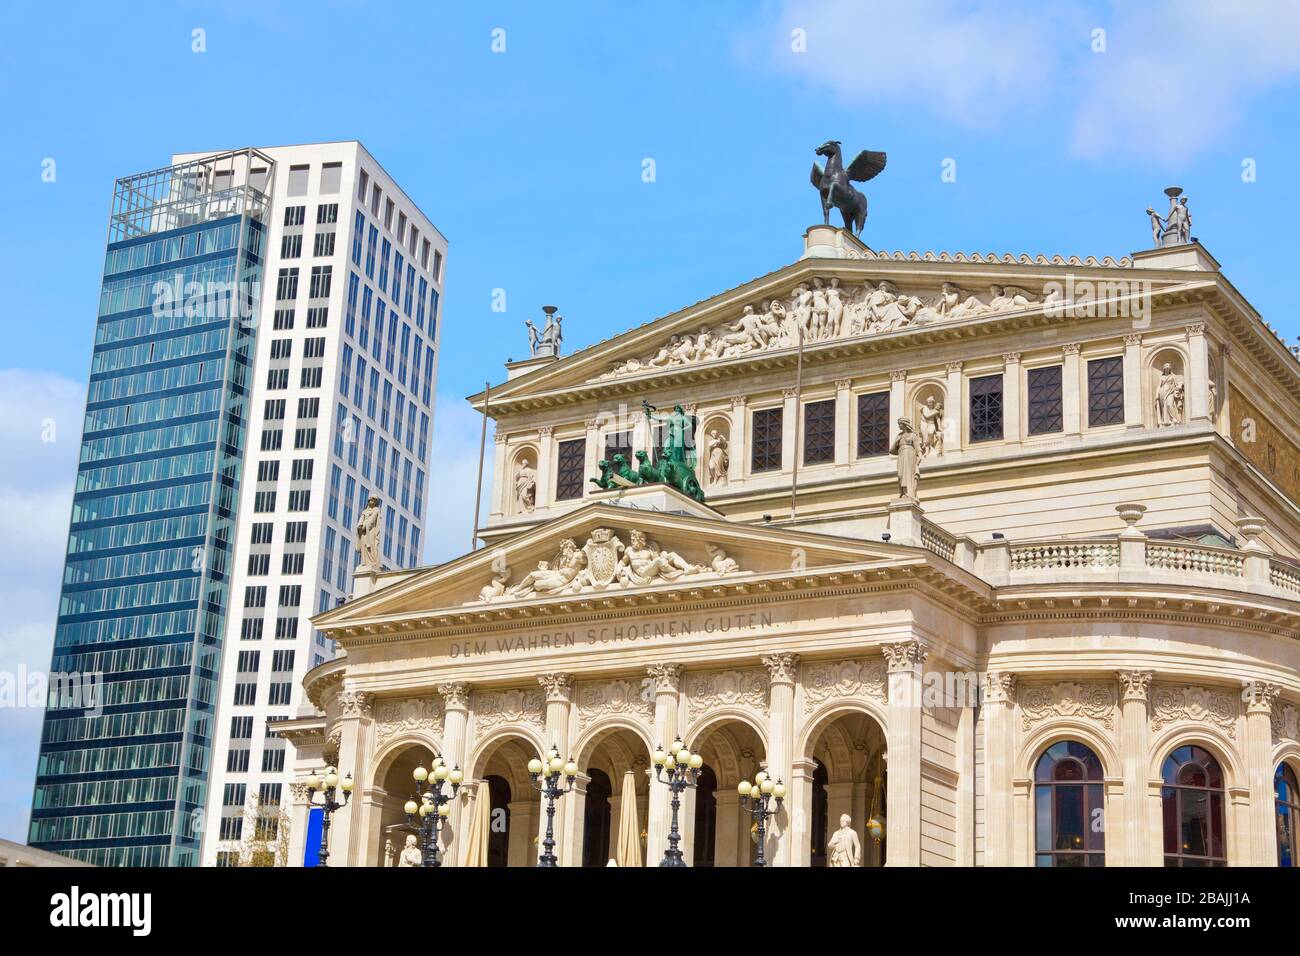 Francfort-sur-le-Main, Allemagne – 19. Avril 2012: Théâtre (Alte Oper) et gratte-ciel au centre de Francfort. Les visiteurs sont locaux mais aussi quelques touristes. Banque D'Images